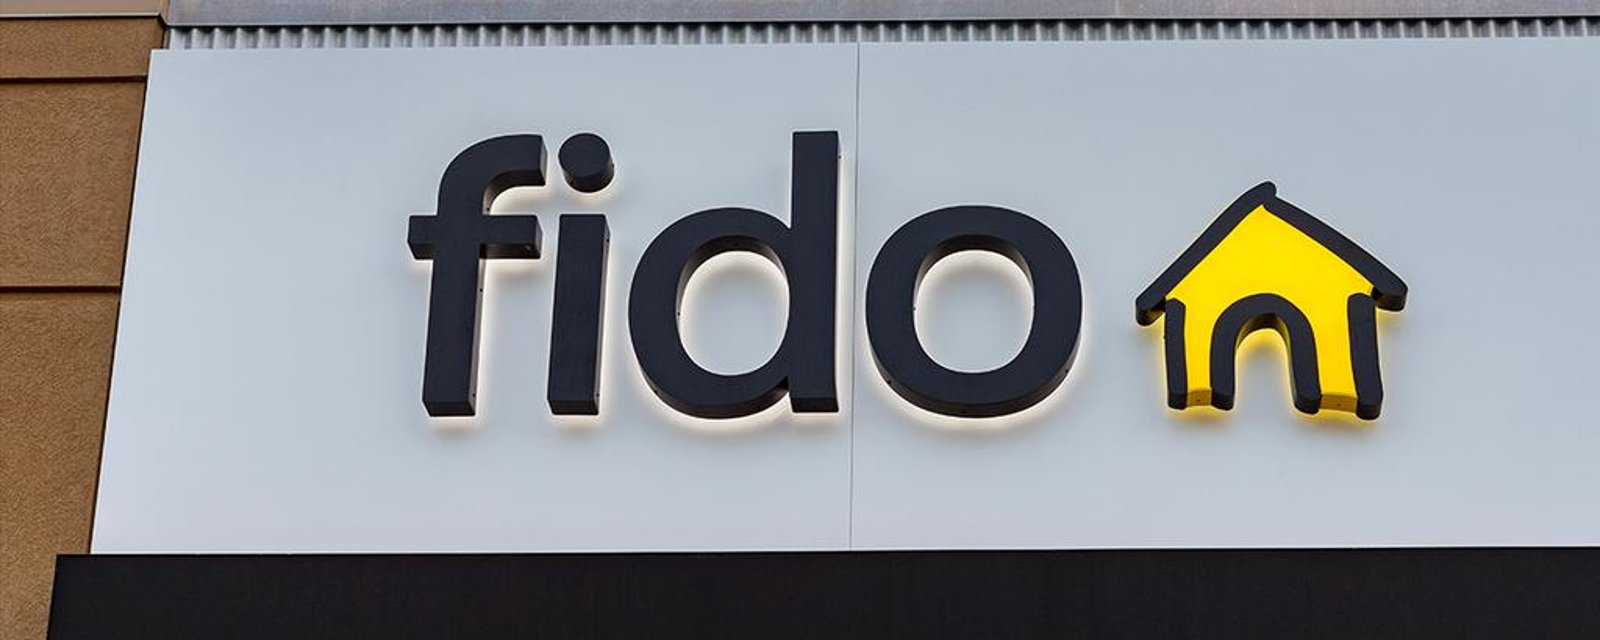 Une action collective de près de 110 millions est autorisée contre Fido, Rogers, Bell, Telus et Vidéotron 